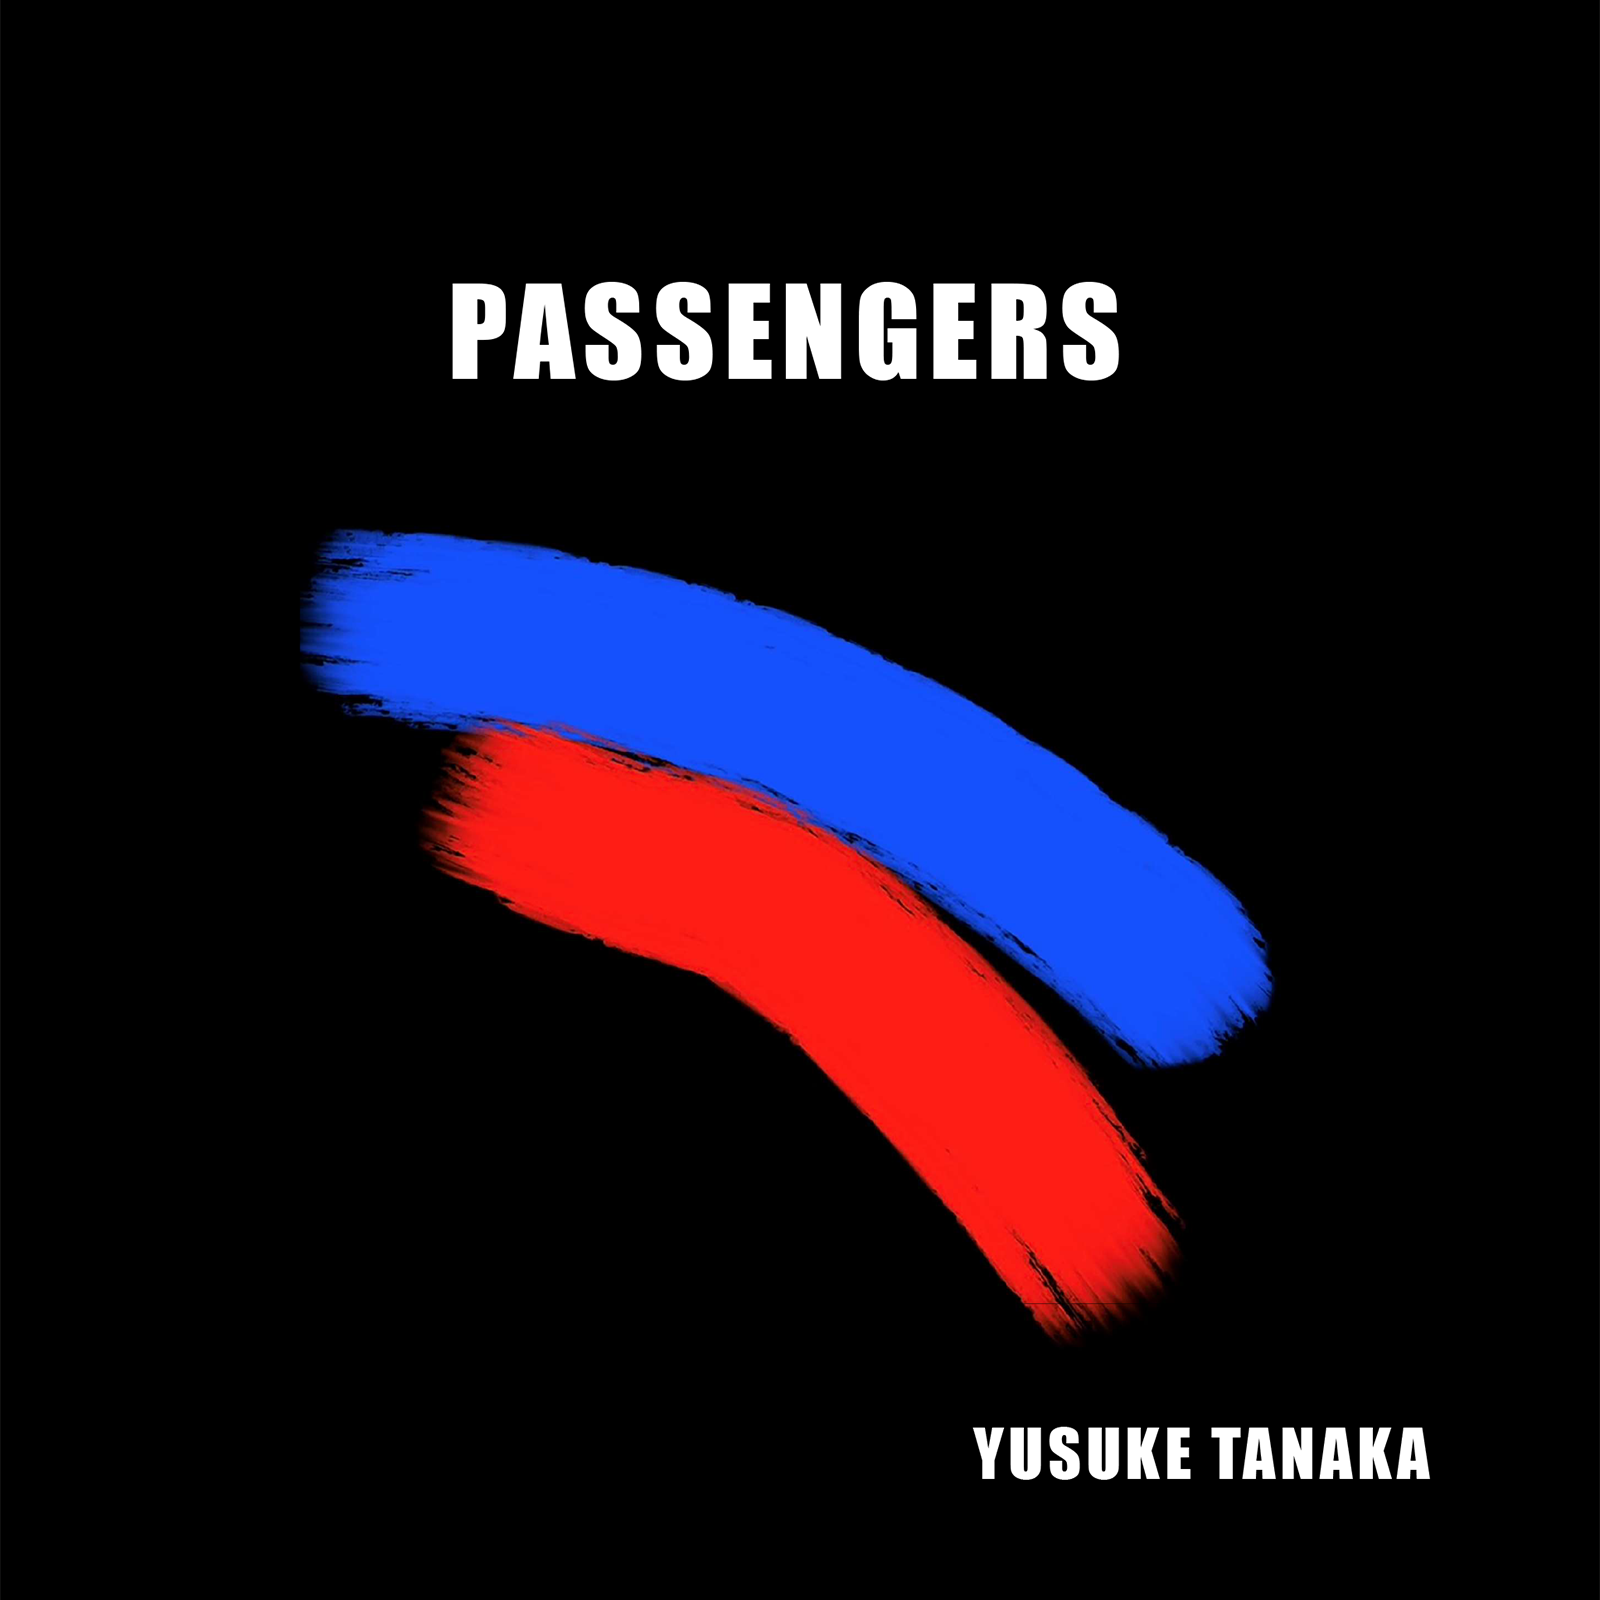 PASSENGERS / YUSUKE TANAKA